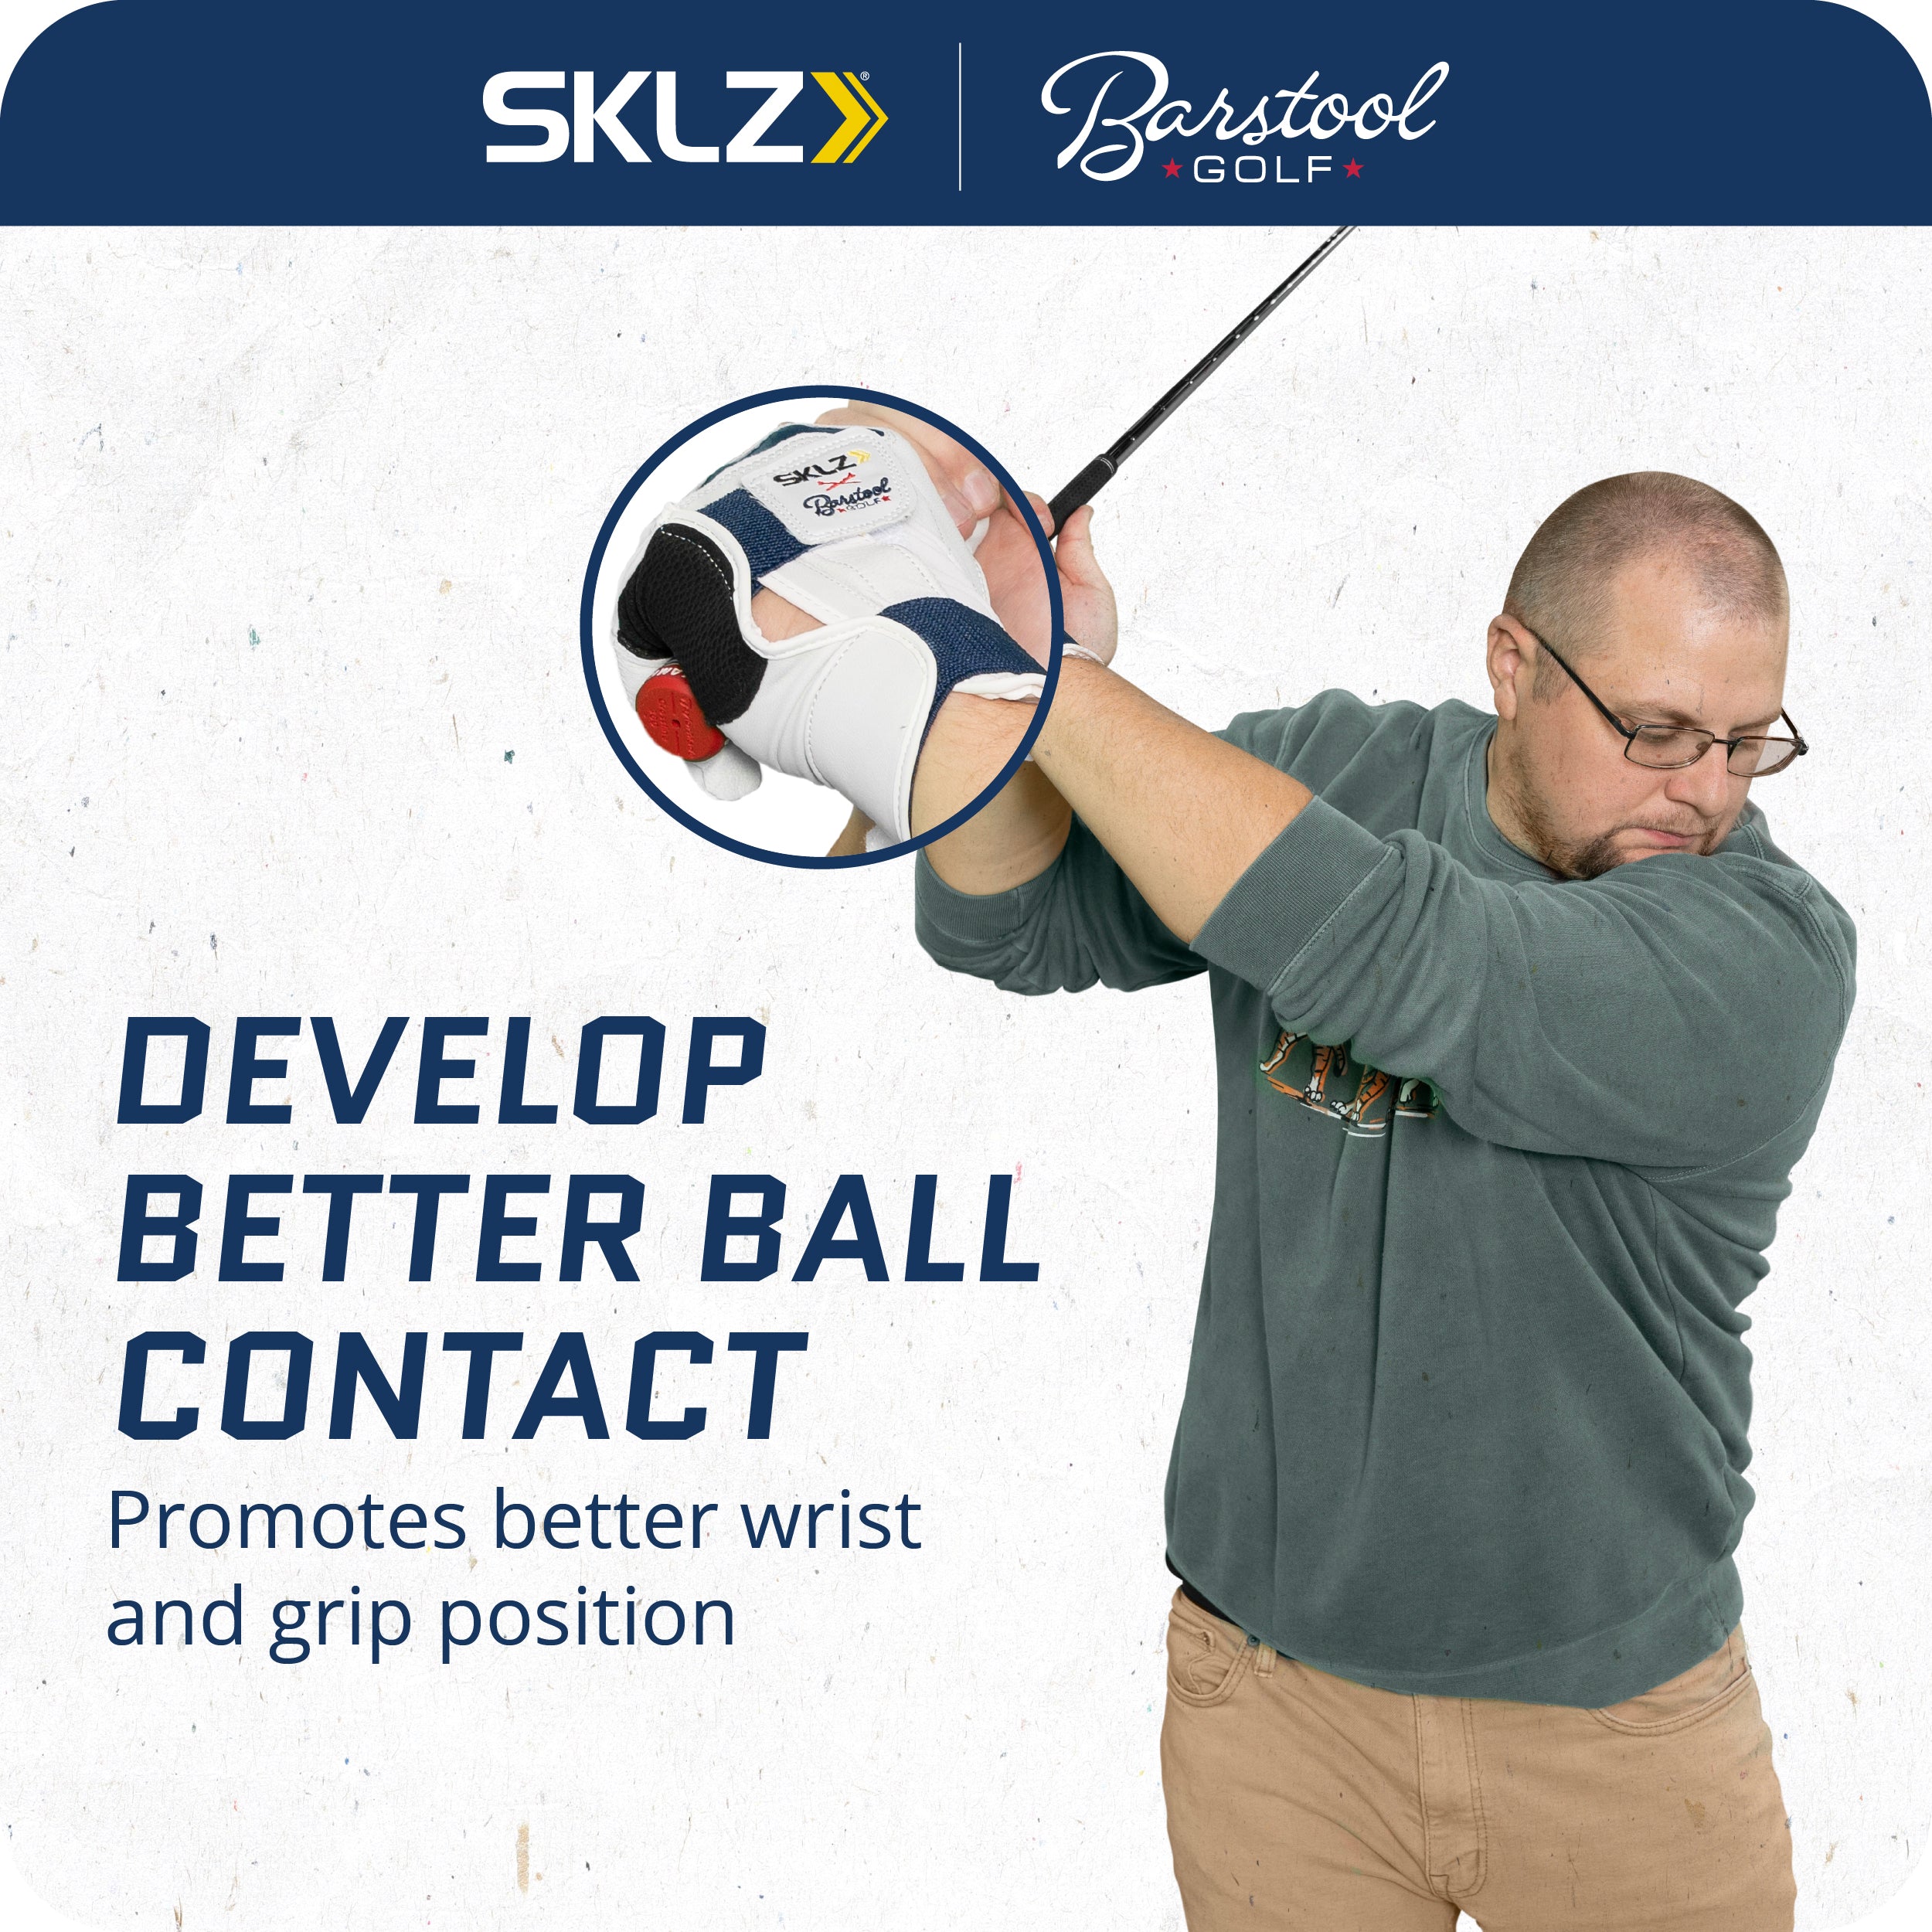 SKLZ x Barstool Golf Smart Glove